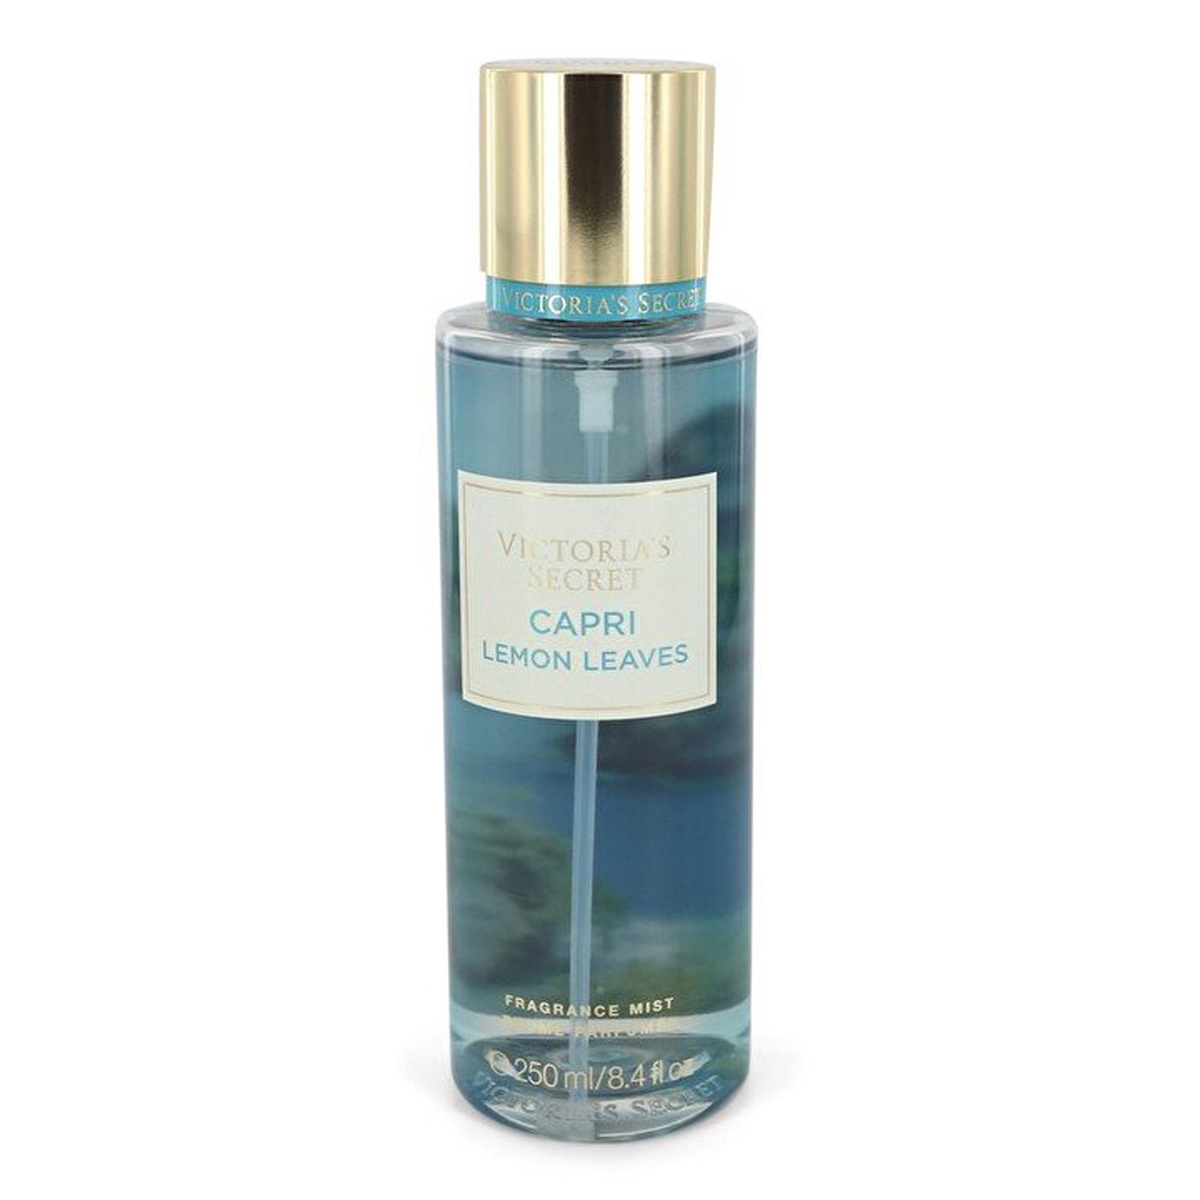 Victoria's Secret Capri Lemon Leaves Fragrance Mist For Women, 248 ml